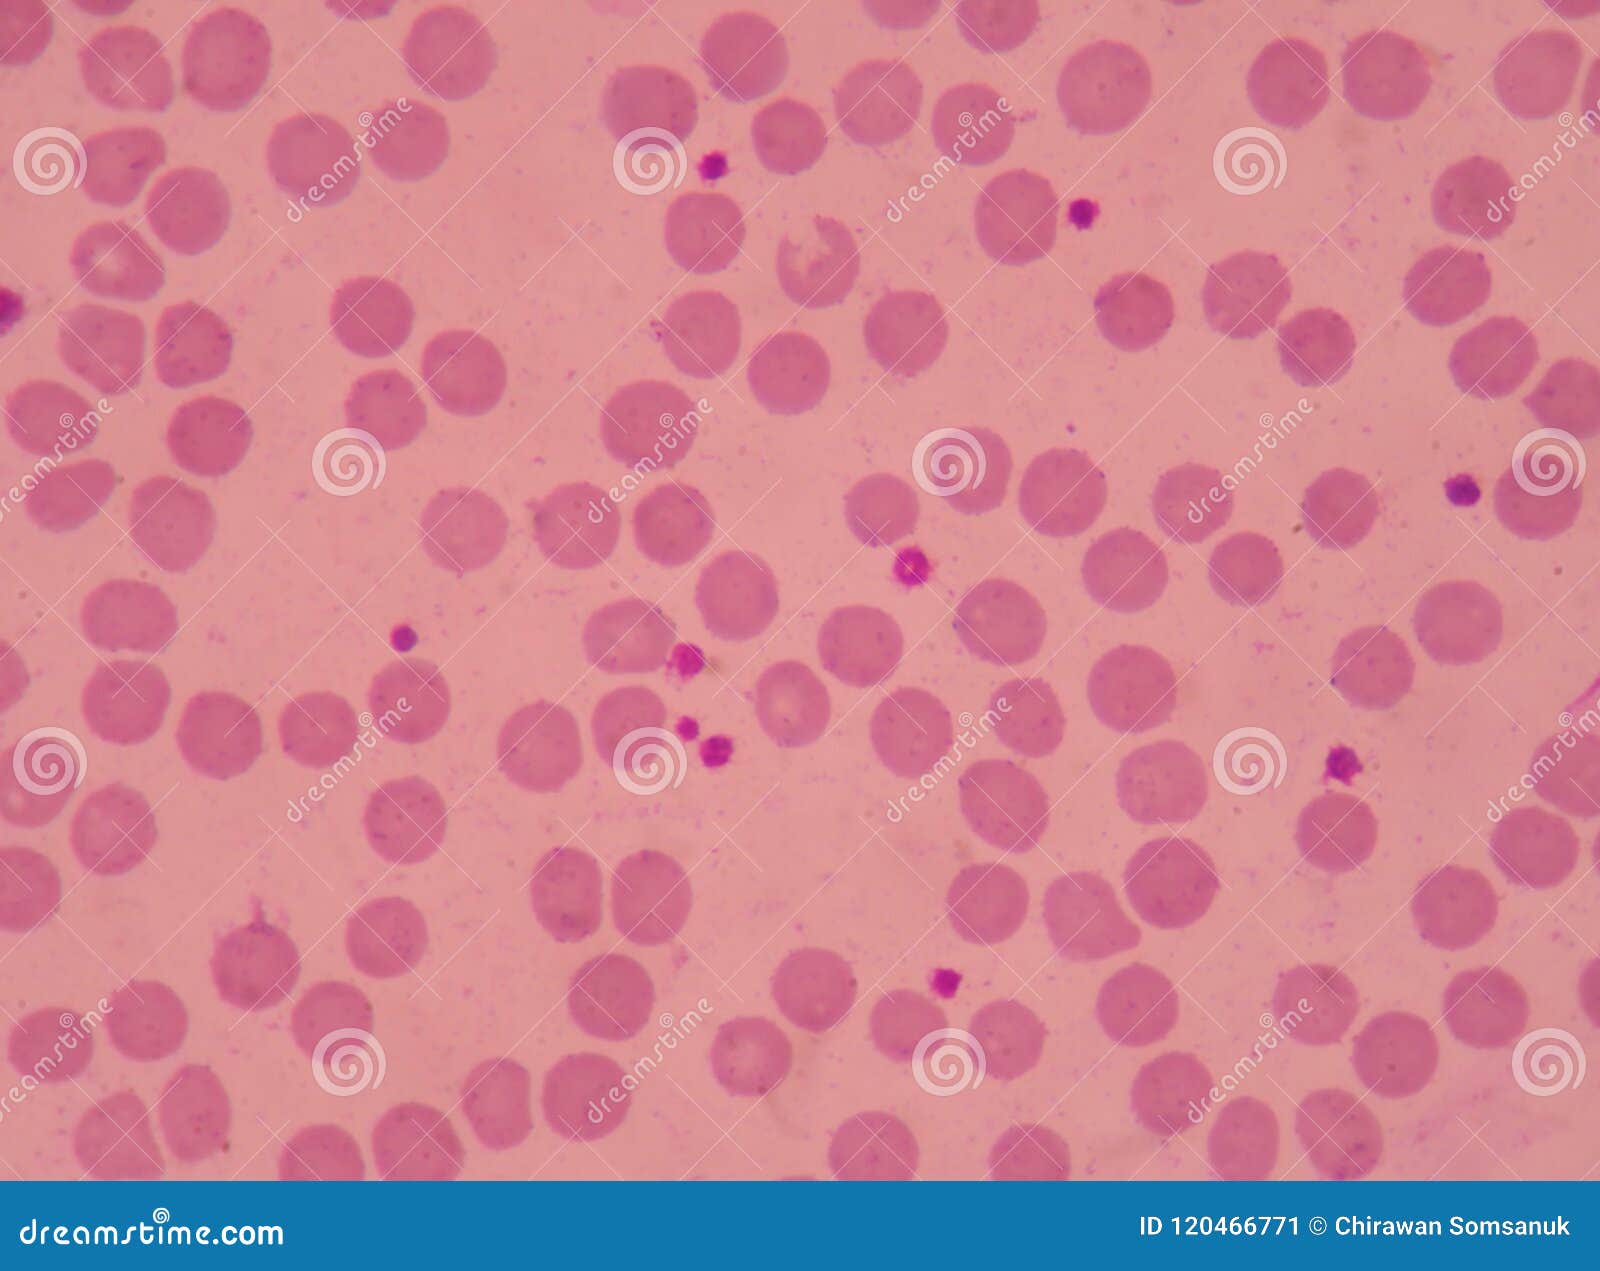 large platelets on blood smear.